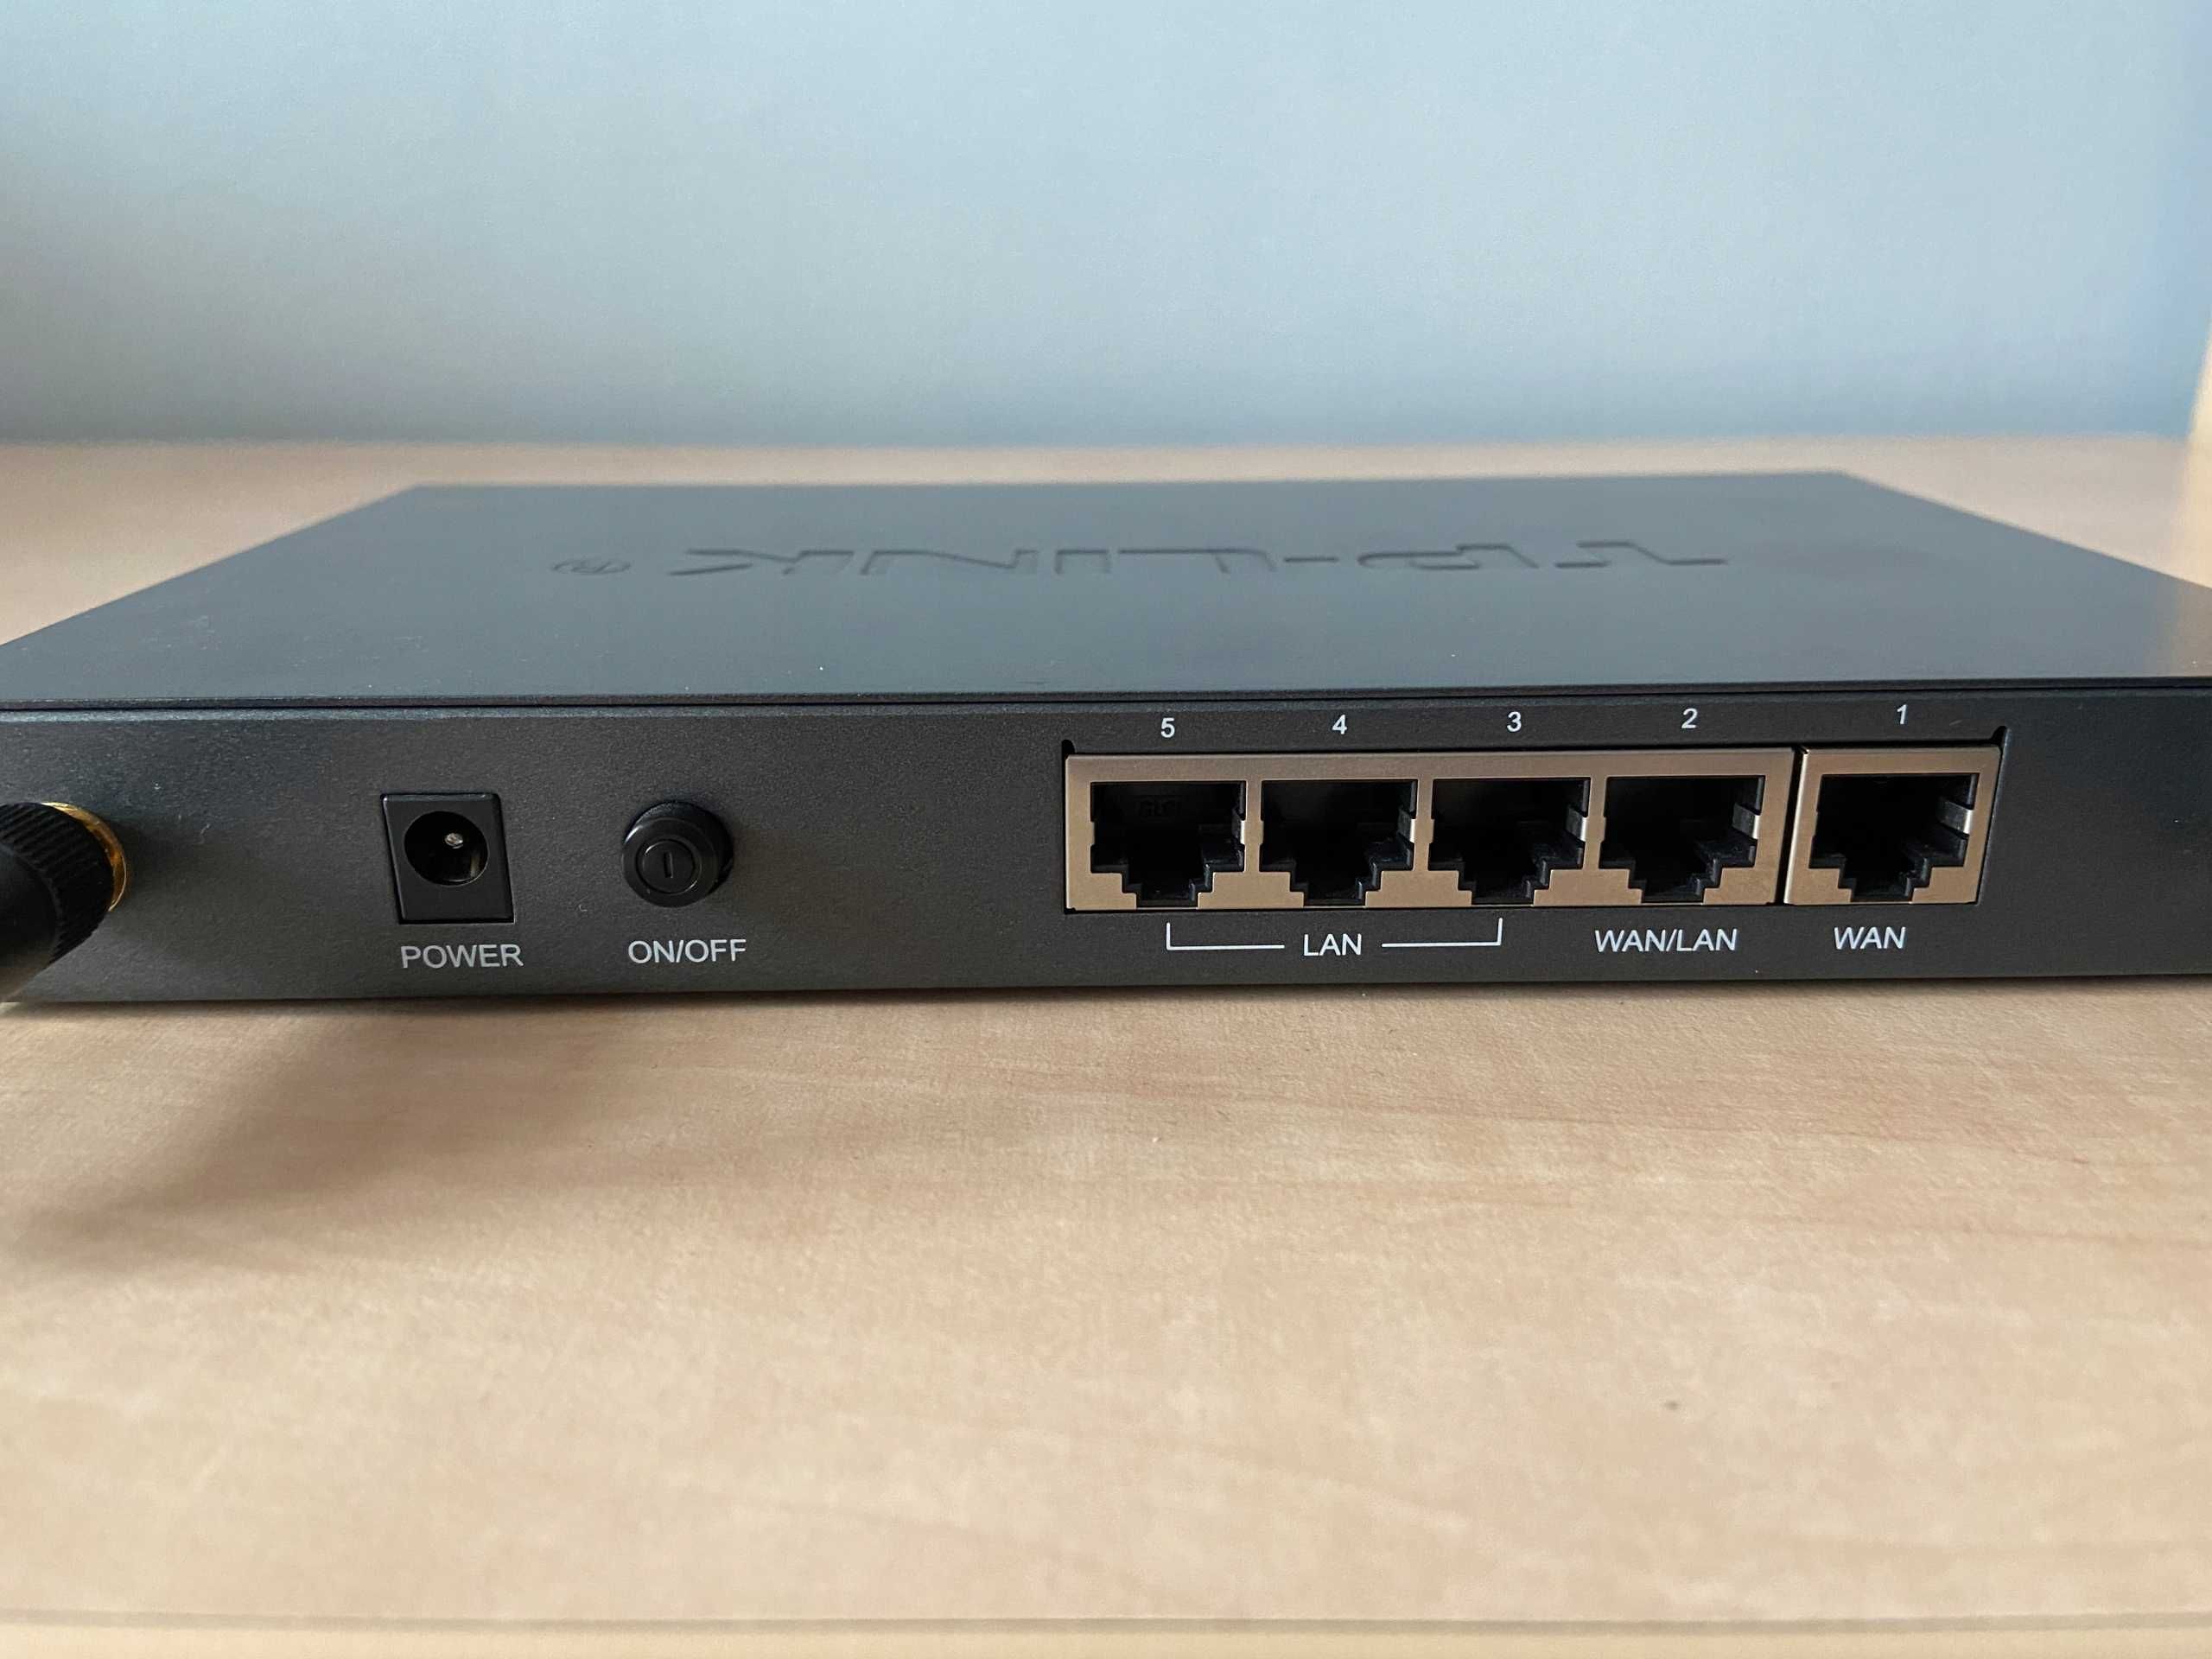 Router VPN TP-Link ER604W